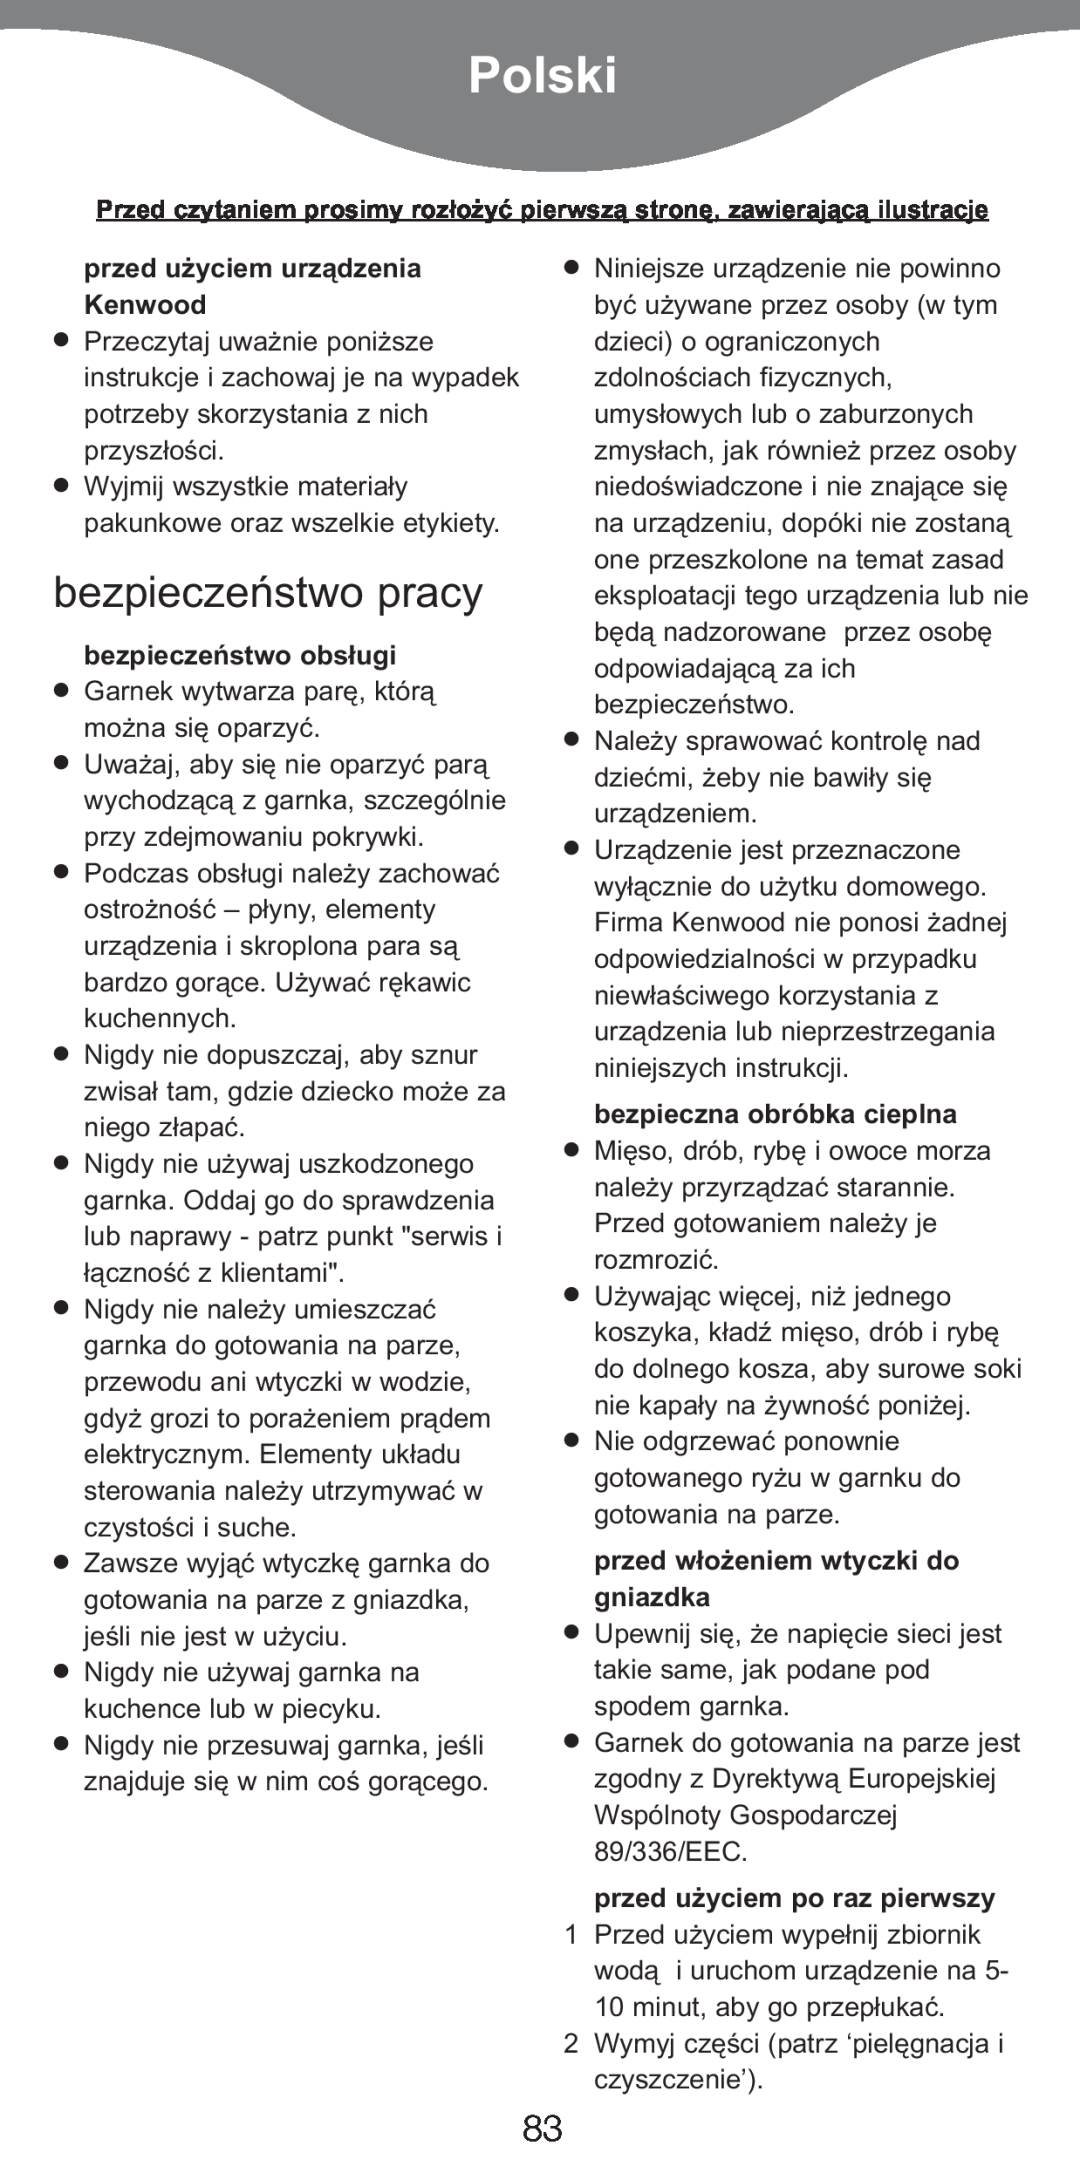 Kenwood FS620 manual Polski, bezpieczeæstwo pracy, przed użyciem urządzenia Kenwood, bezpieczeæstwo obs¢ugi 